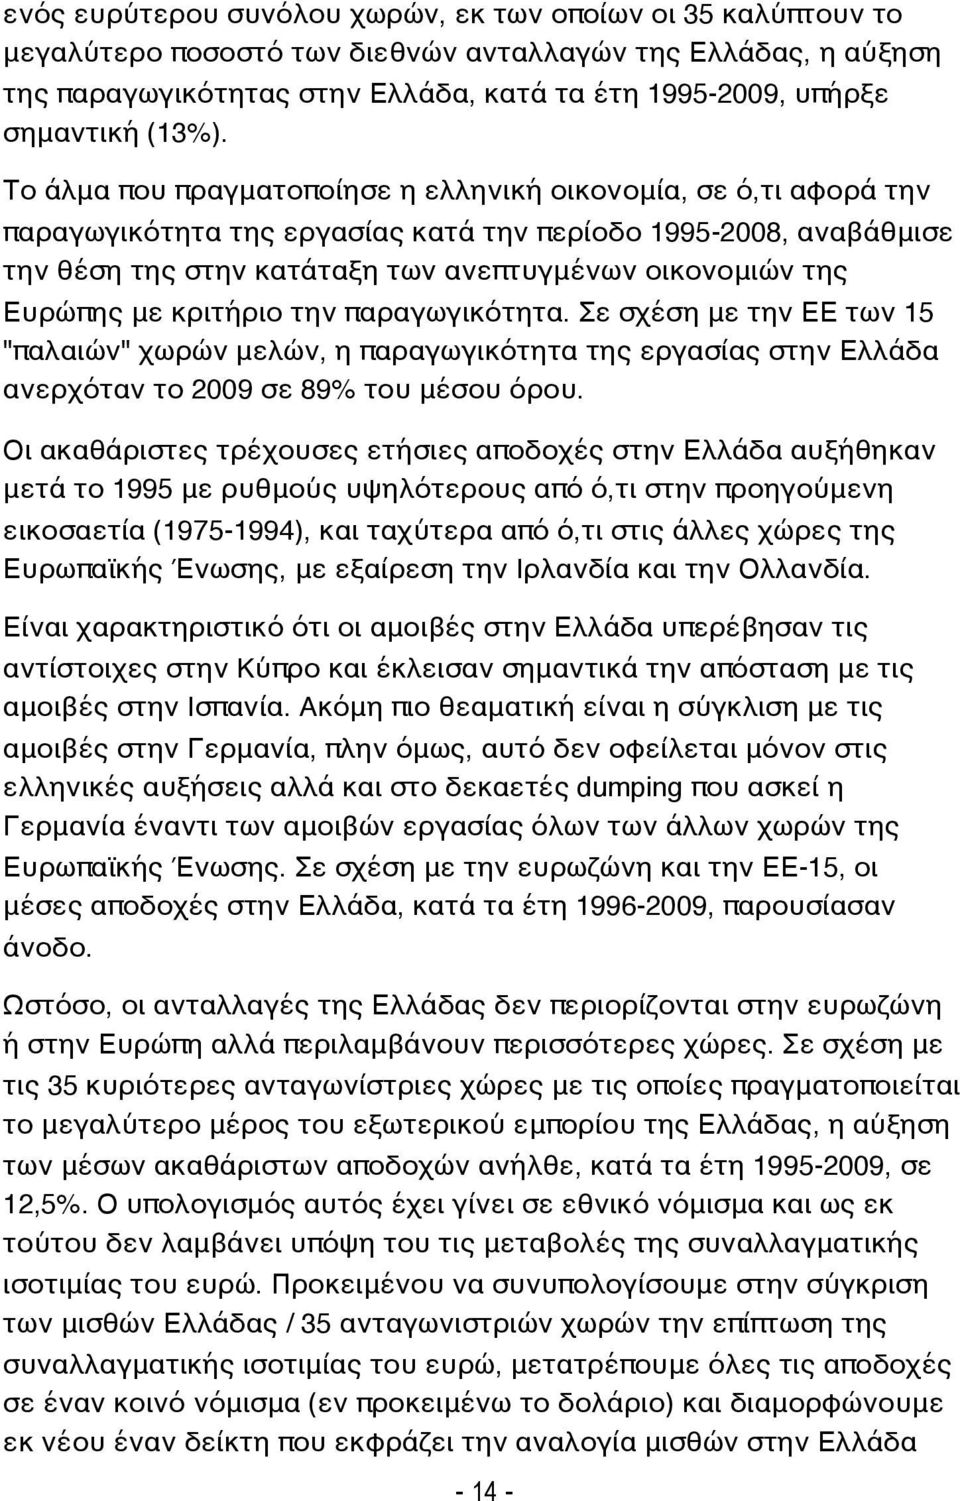 Το άλμα που πραγματοποίησε η ελληνική οικονομία, σε ό,τι αφορά την παραγωγικότητα της εργασίας κατά την περίοδο 1995-2008, αναβάθμισε την θέση της στην κατάταξη των ανεπτυγμένων οικονομιών της